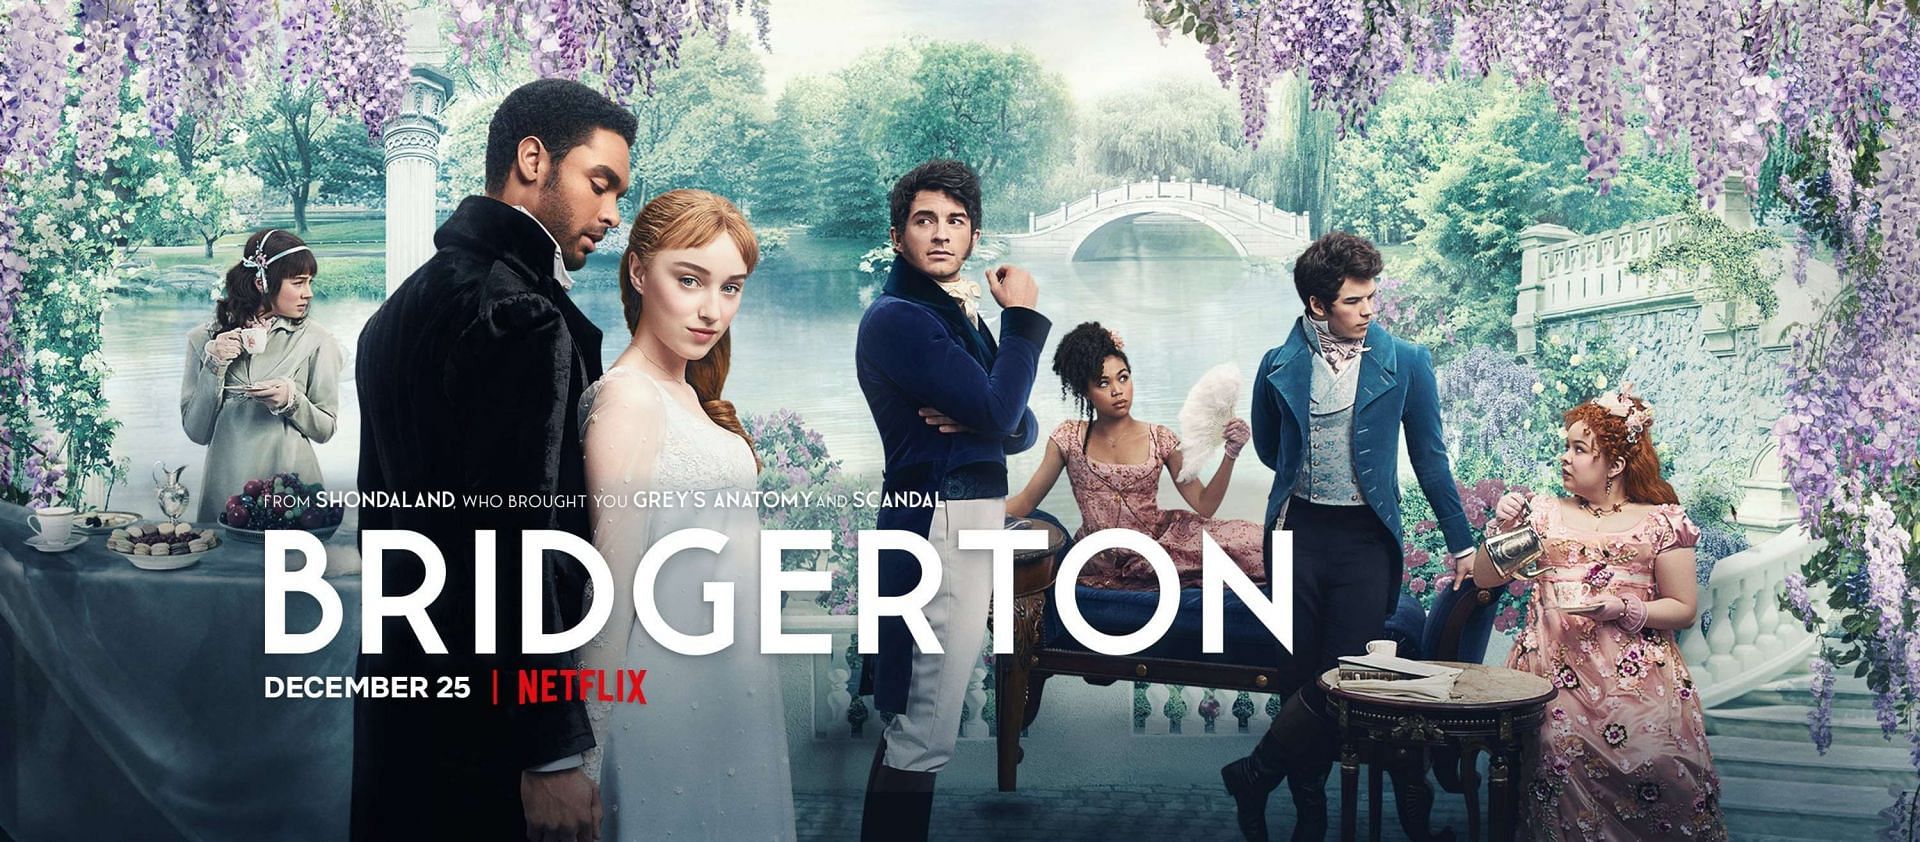 Bridgerton by Netflix (Image via Netflix)